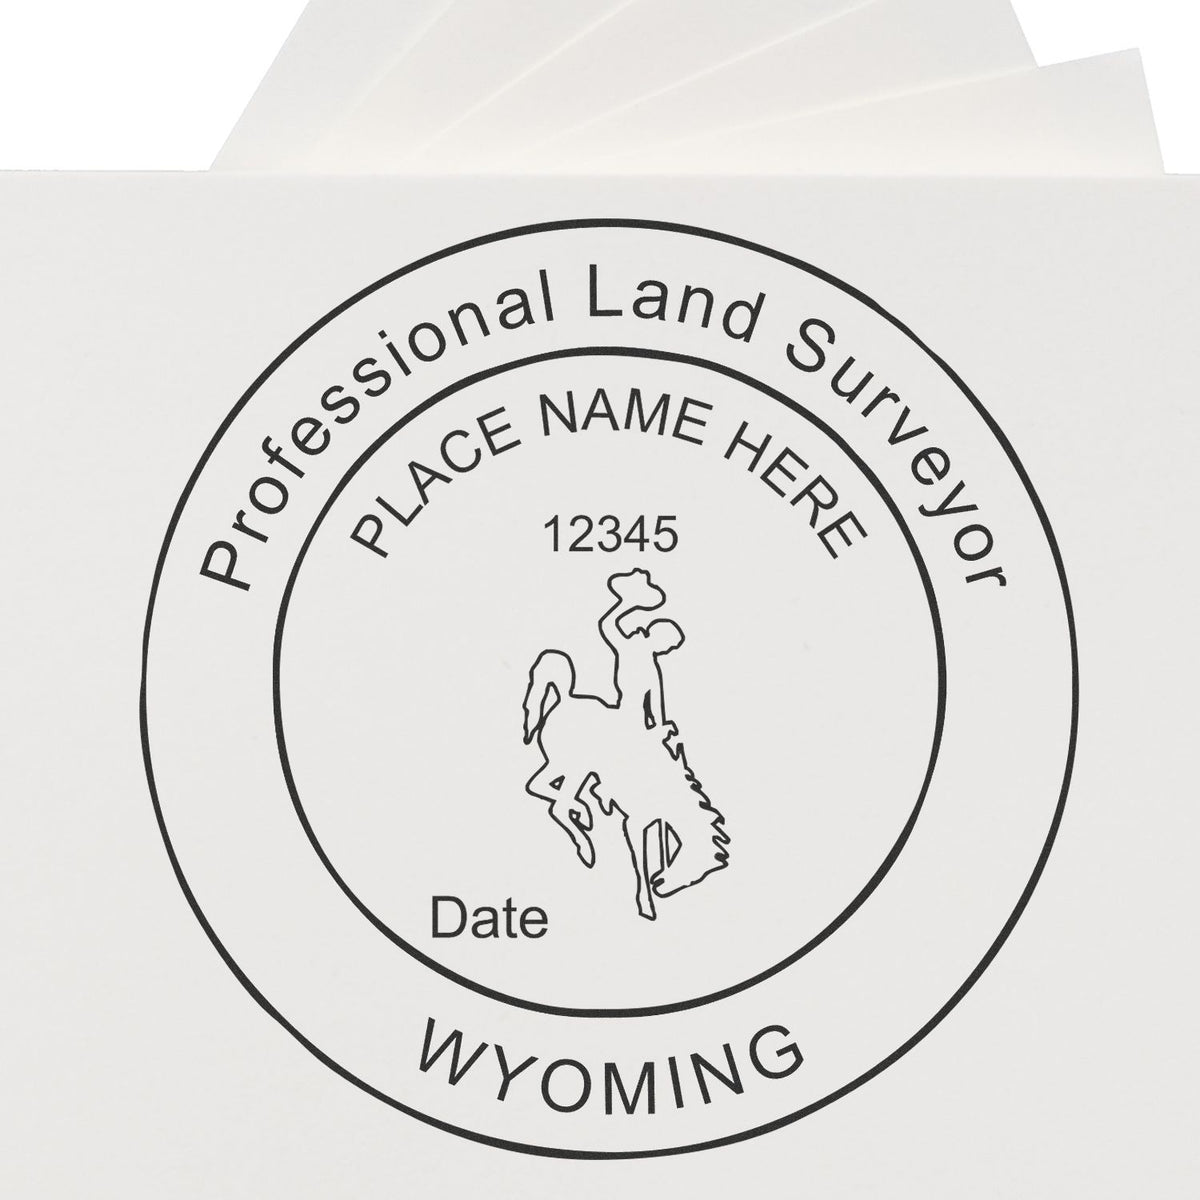 Wyoming Land Surveyor Seal Stamp In Use Photo